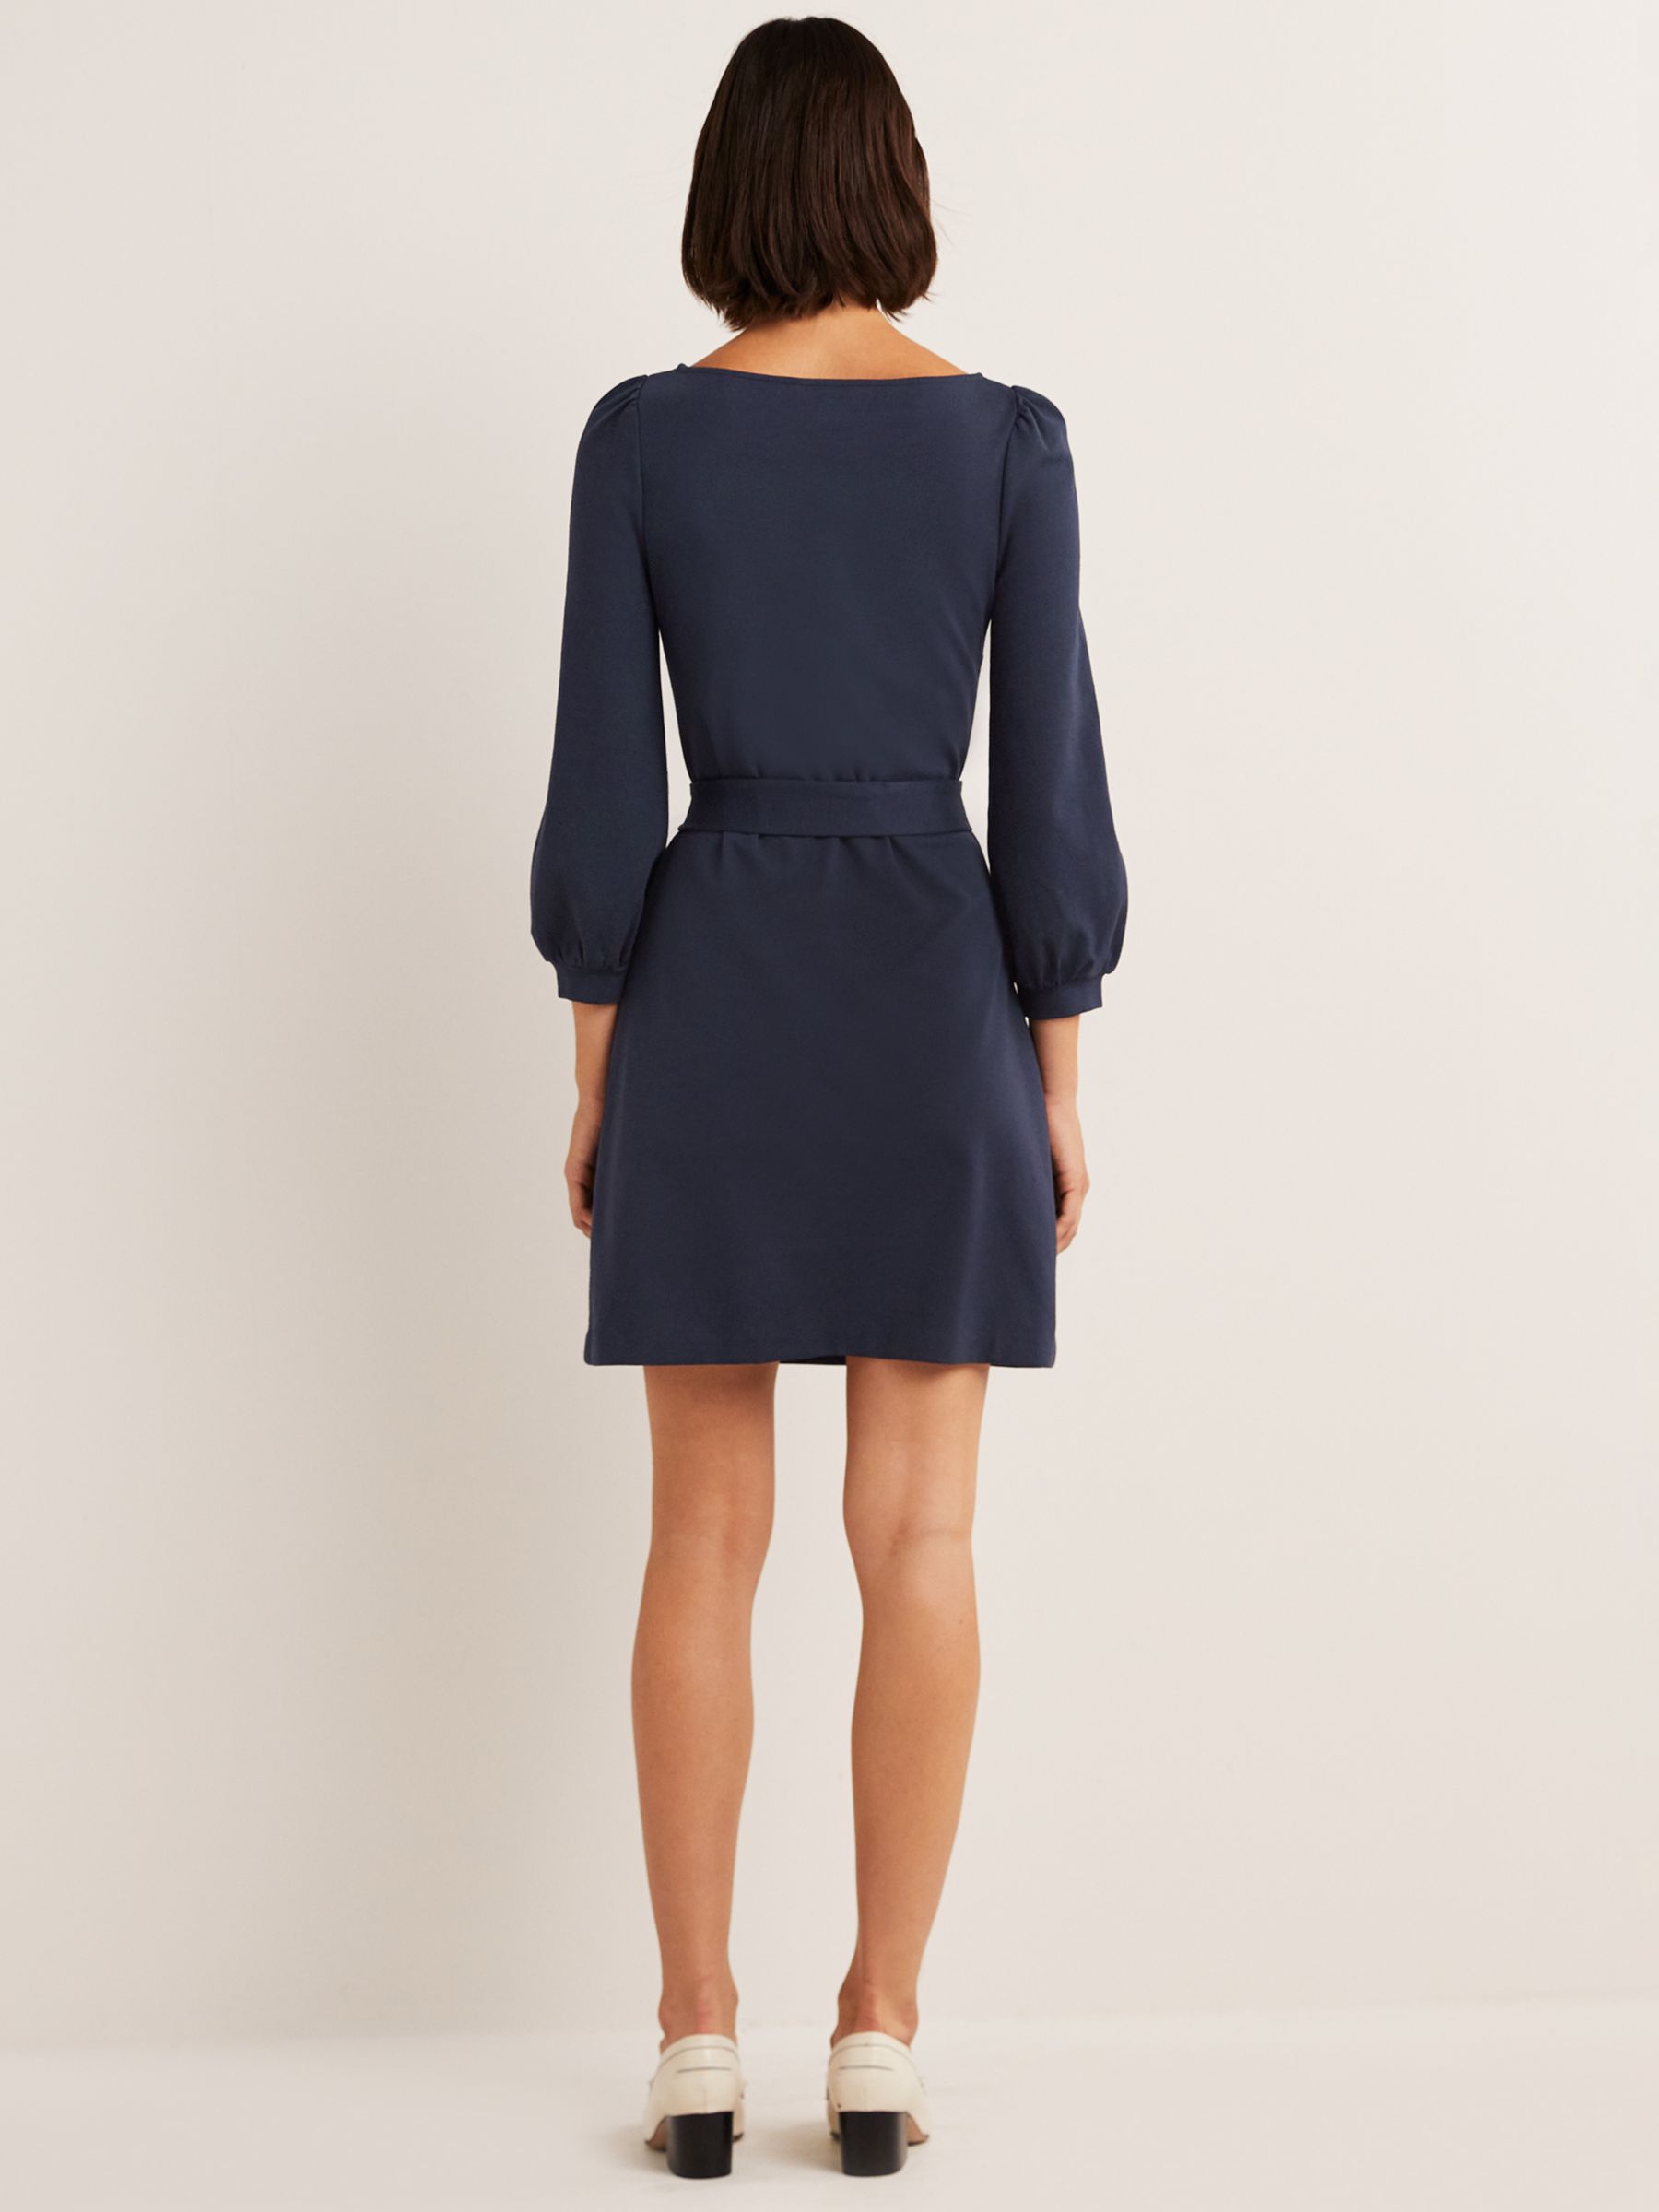 Buy Boden Black Violet Jersey Shift Dress from the Next UK online shop